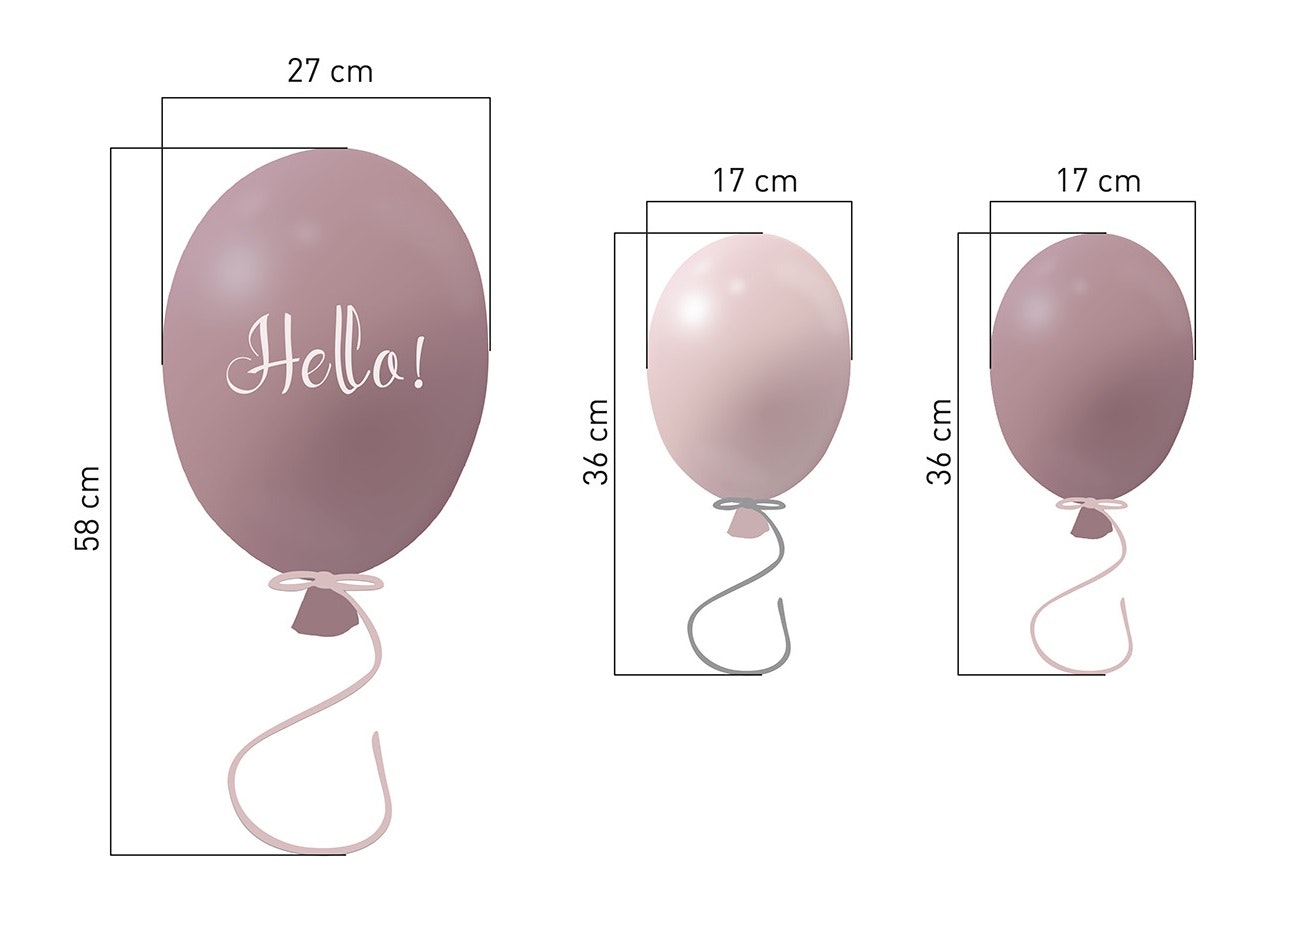 Väggklistermärke partyballonger Hello 3-pack, dusty pink - defekt 